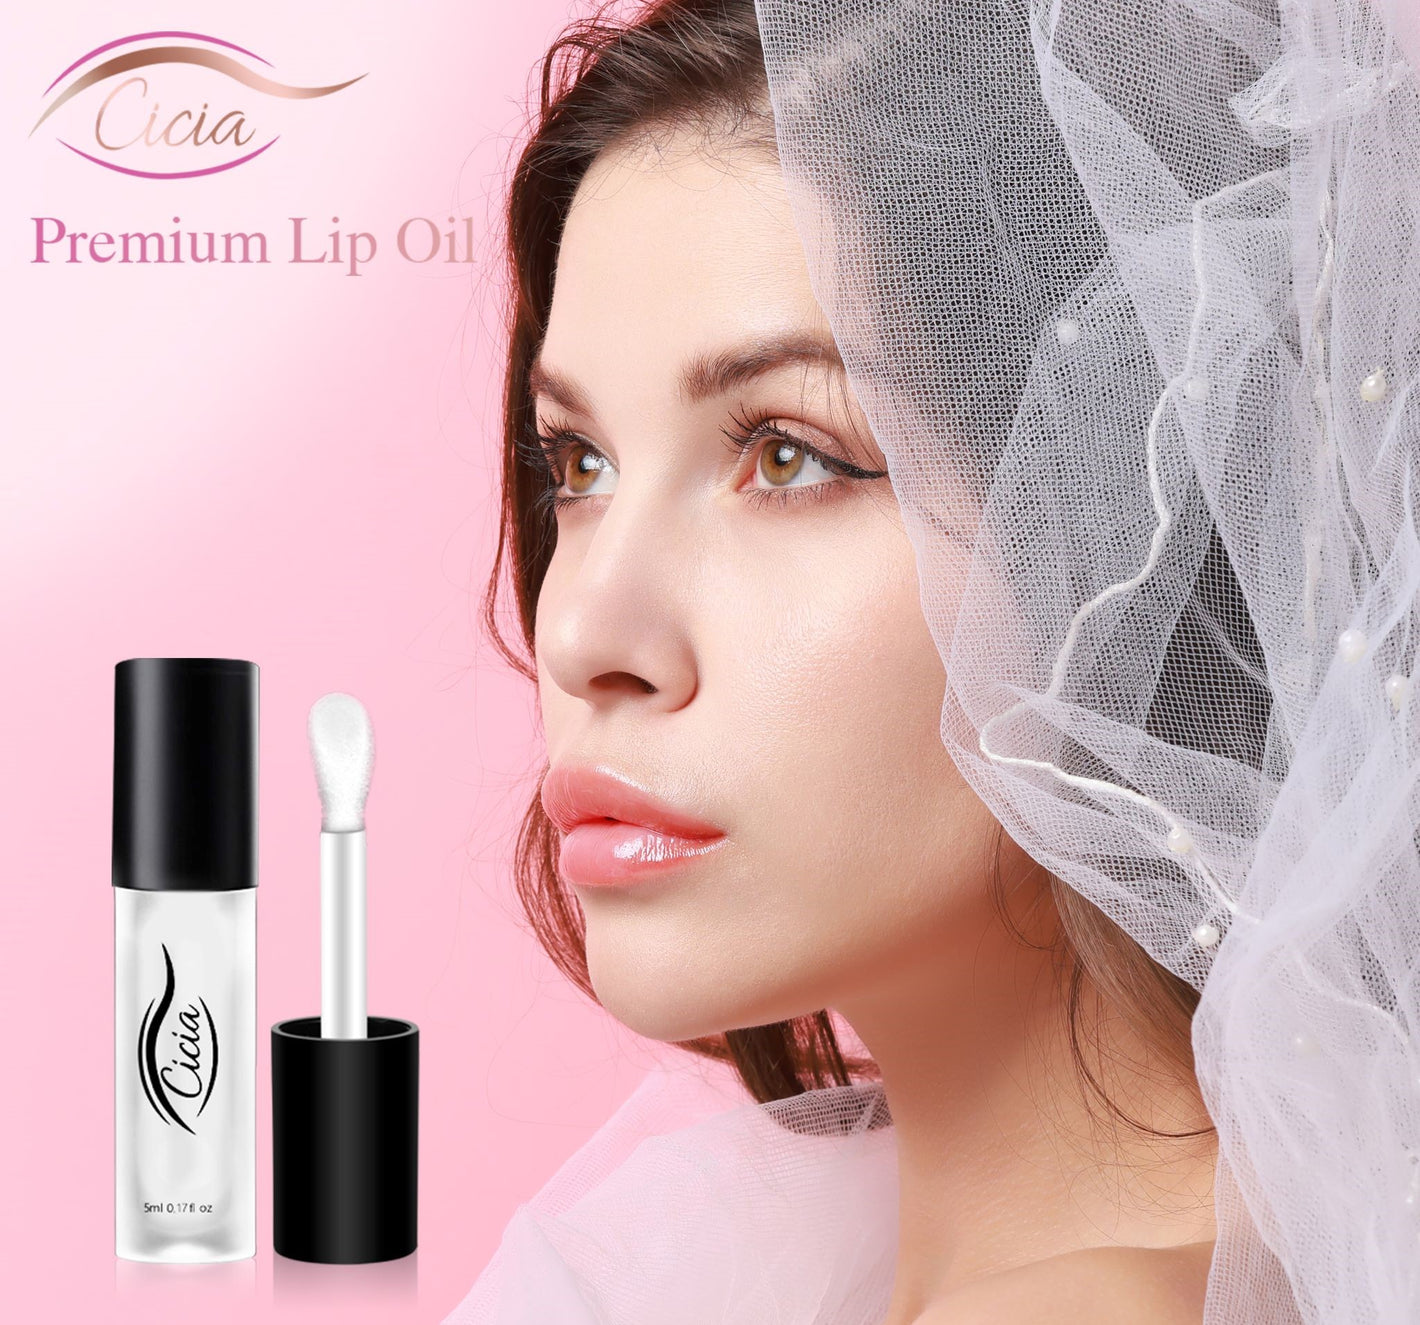 Cicia - Premium Lip Oil Clear - Cicia Store - Lip Moisturizer